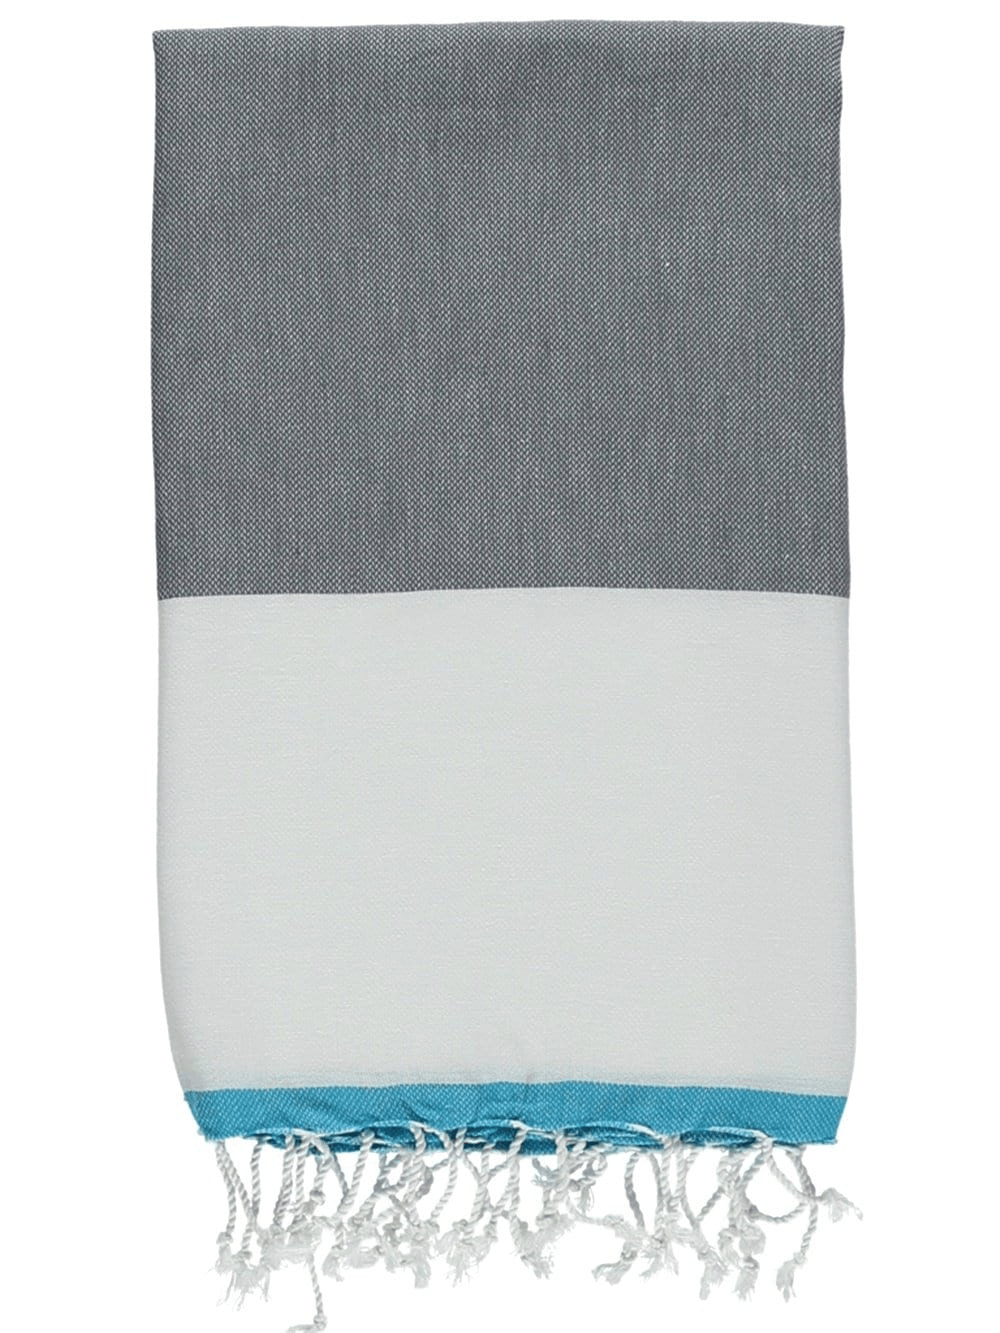 Savona Turkish Towels - The Riviera Towel Company